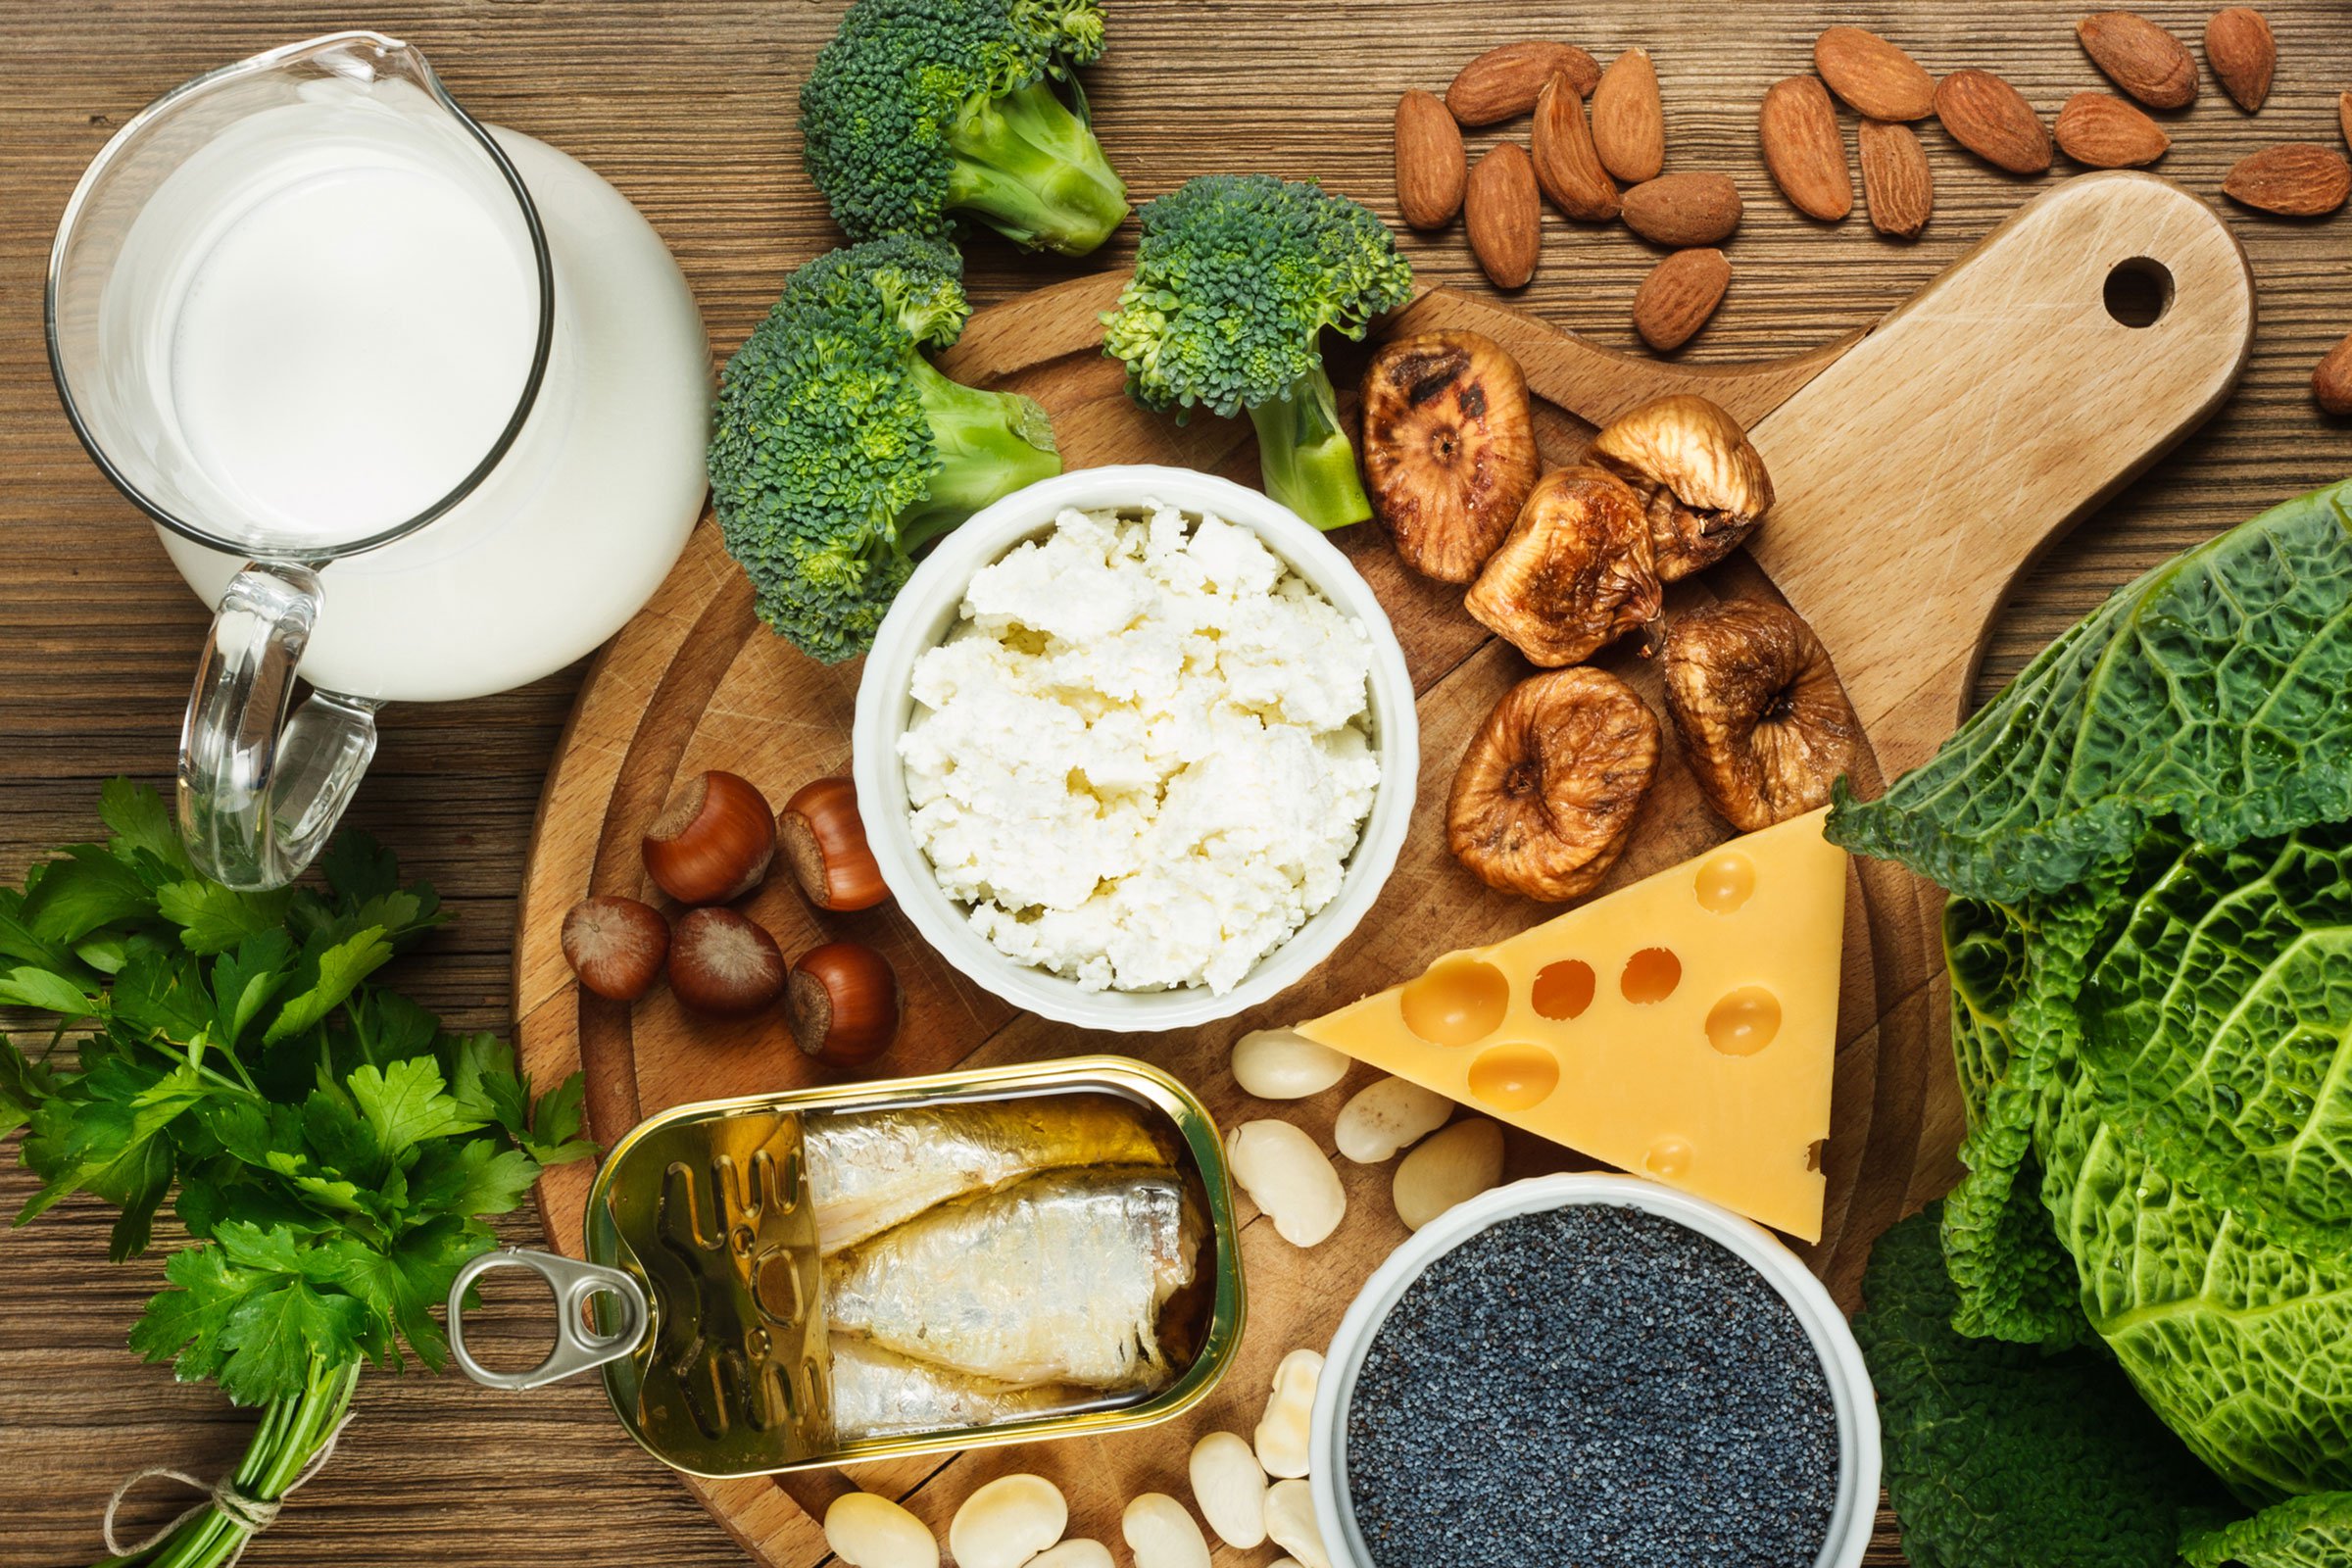 لیستی از محصولات غذایی مورد نیاز افراد گیاهخوار